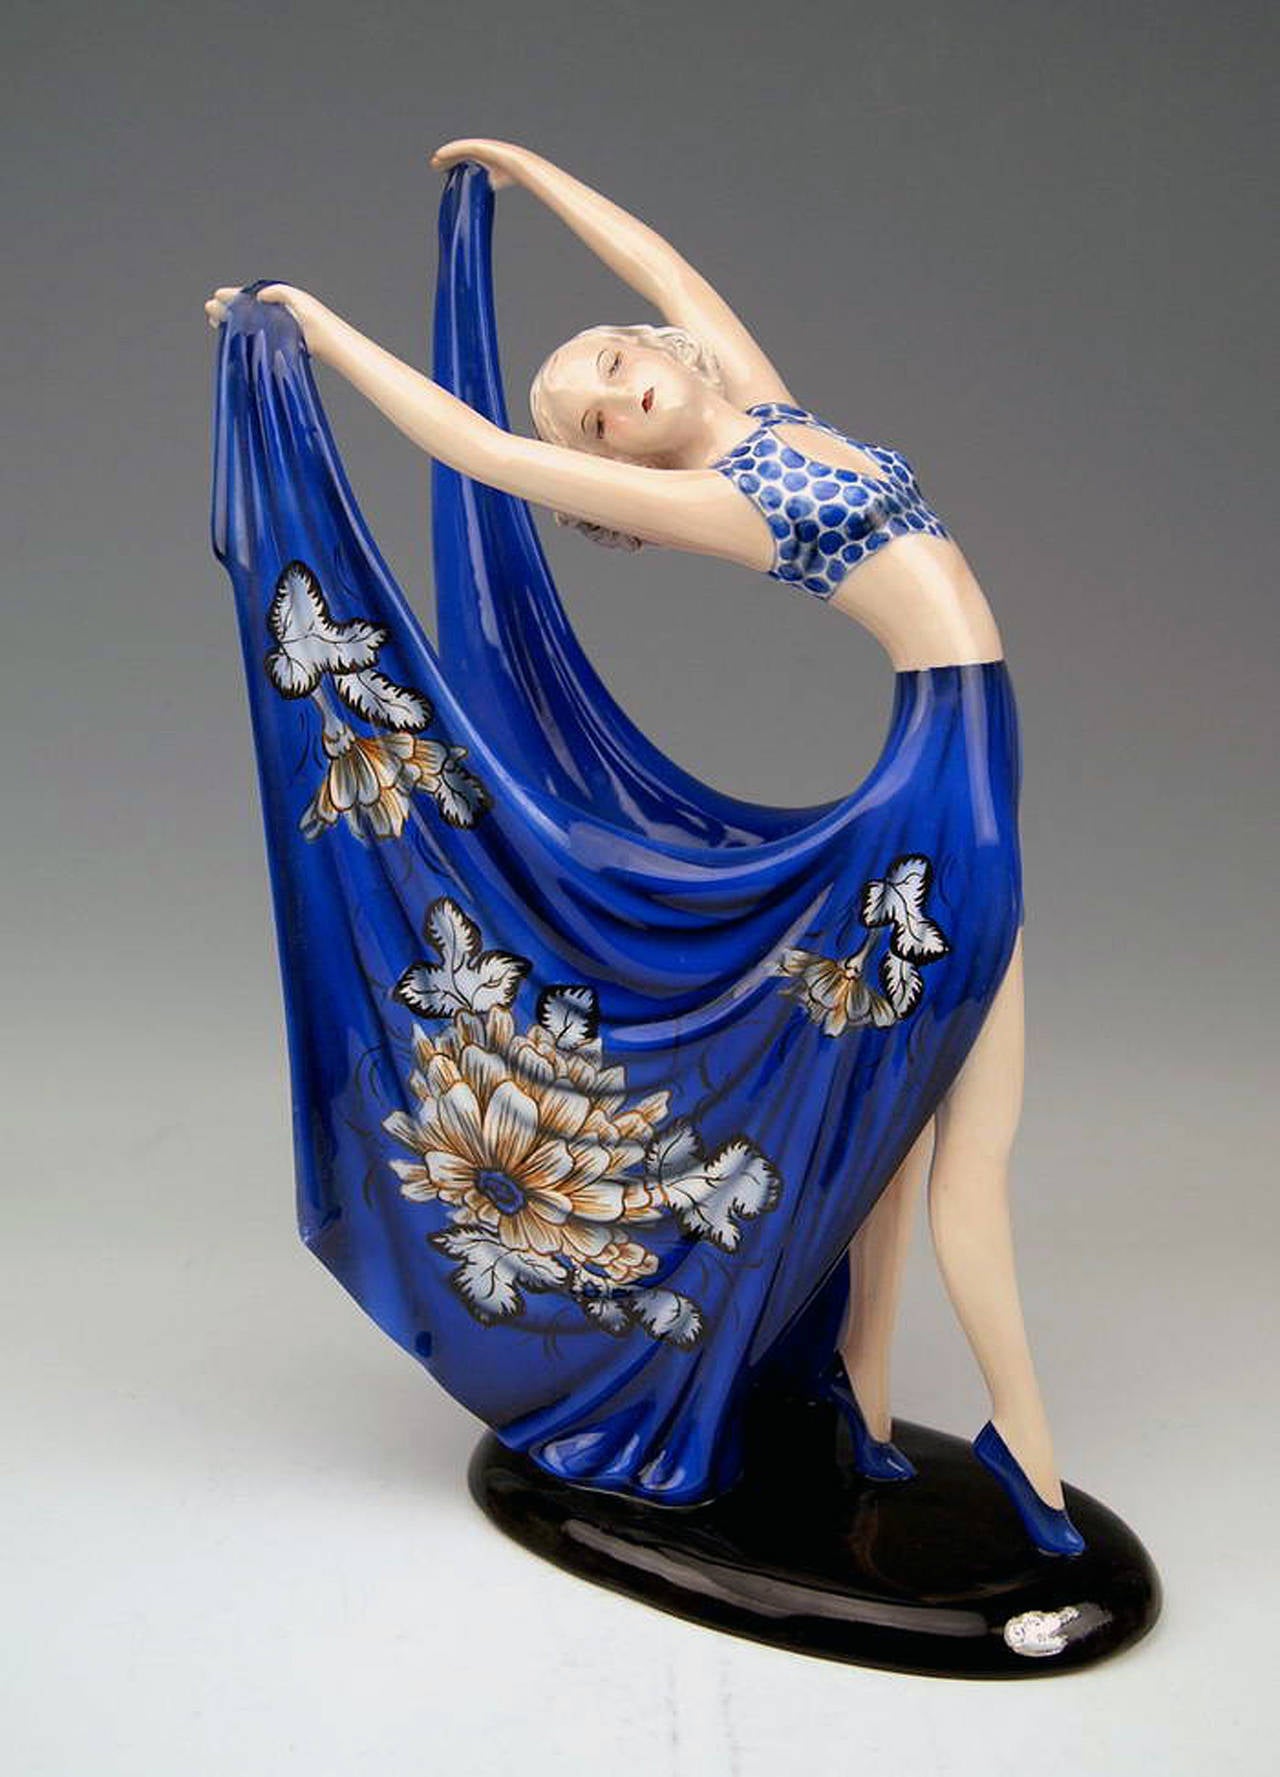 GOLDSCHEIDER VIENNA DANCING LADY WEARING COBALT BLUE DRESS

Designed by Stefan  (= Stephen)  Dakon  (1904 - 1992), 
circa 1935    |   made 1938.  
model number 7195  /  1804  /  6

HALLMARKED:
Goldscheider WIEN ( = VIENNA) stamp mark
Made in